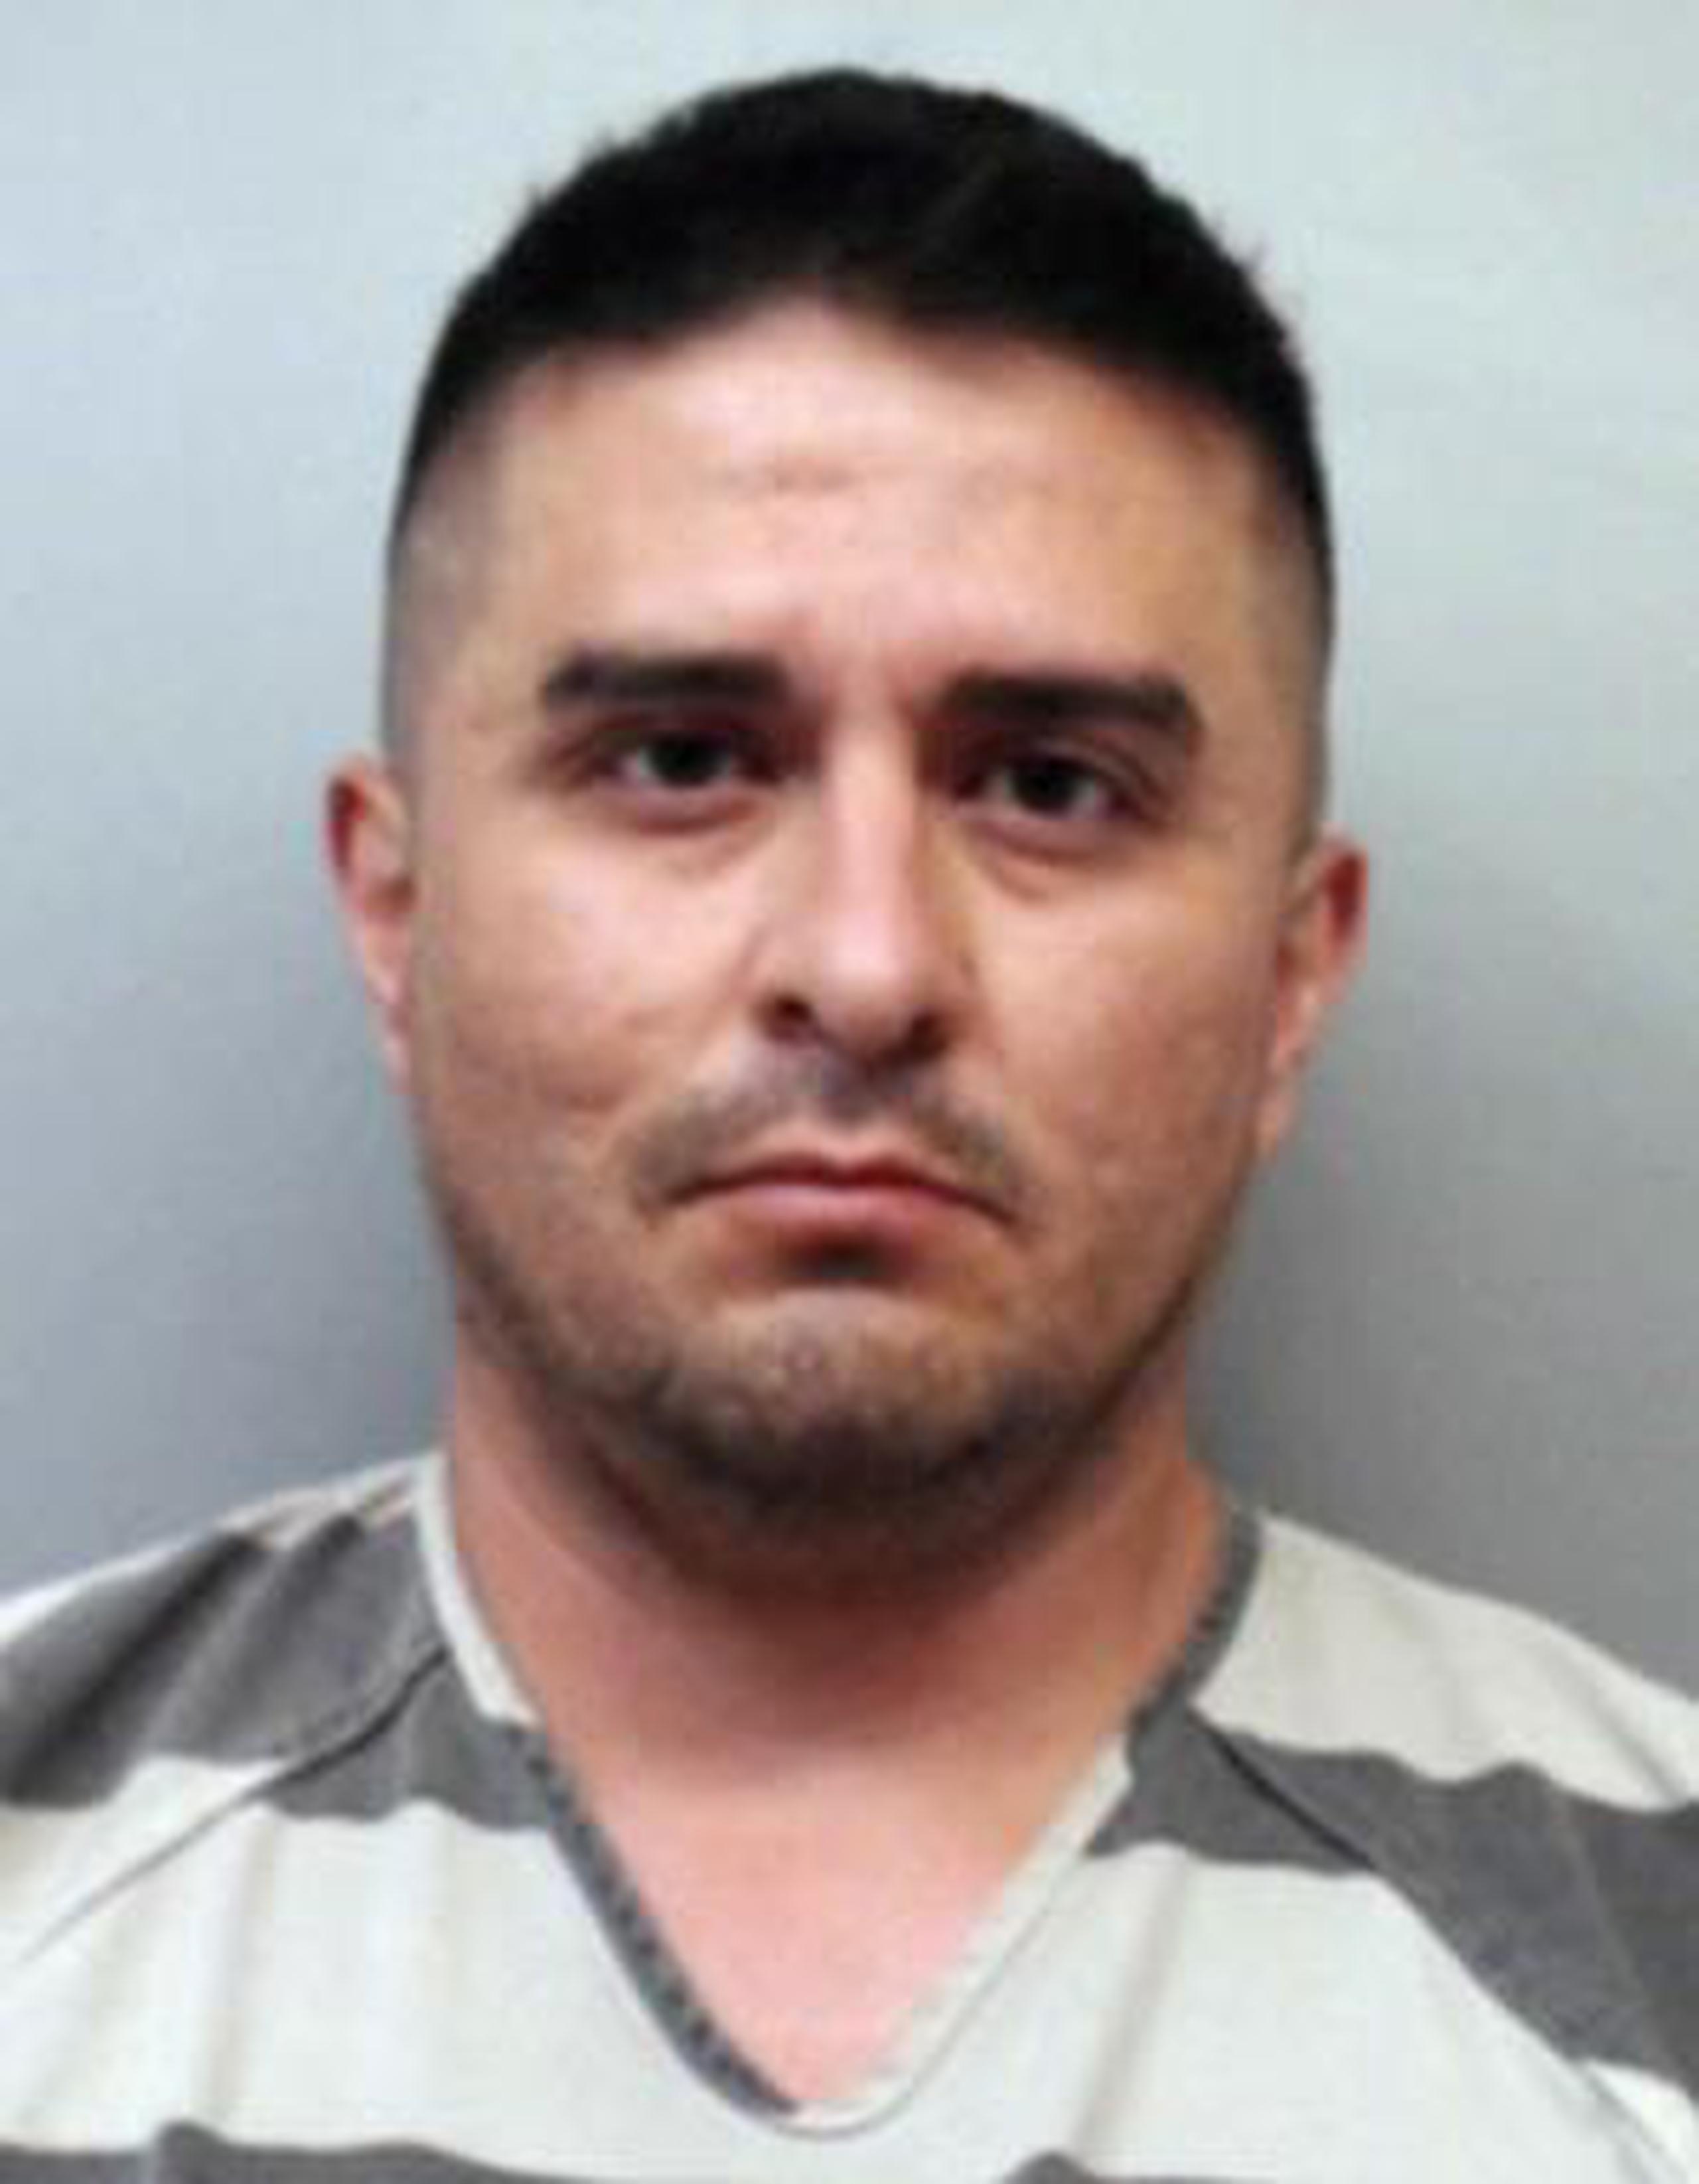 Juan David Ortiz confesó haber asesinado a cuatro mujeres con disparos en la cabeza y dejar sus cadáveres en caminos rurales de Texas. (Webb County Sheriff's Office vía AP)